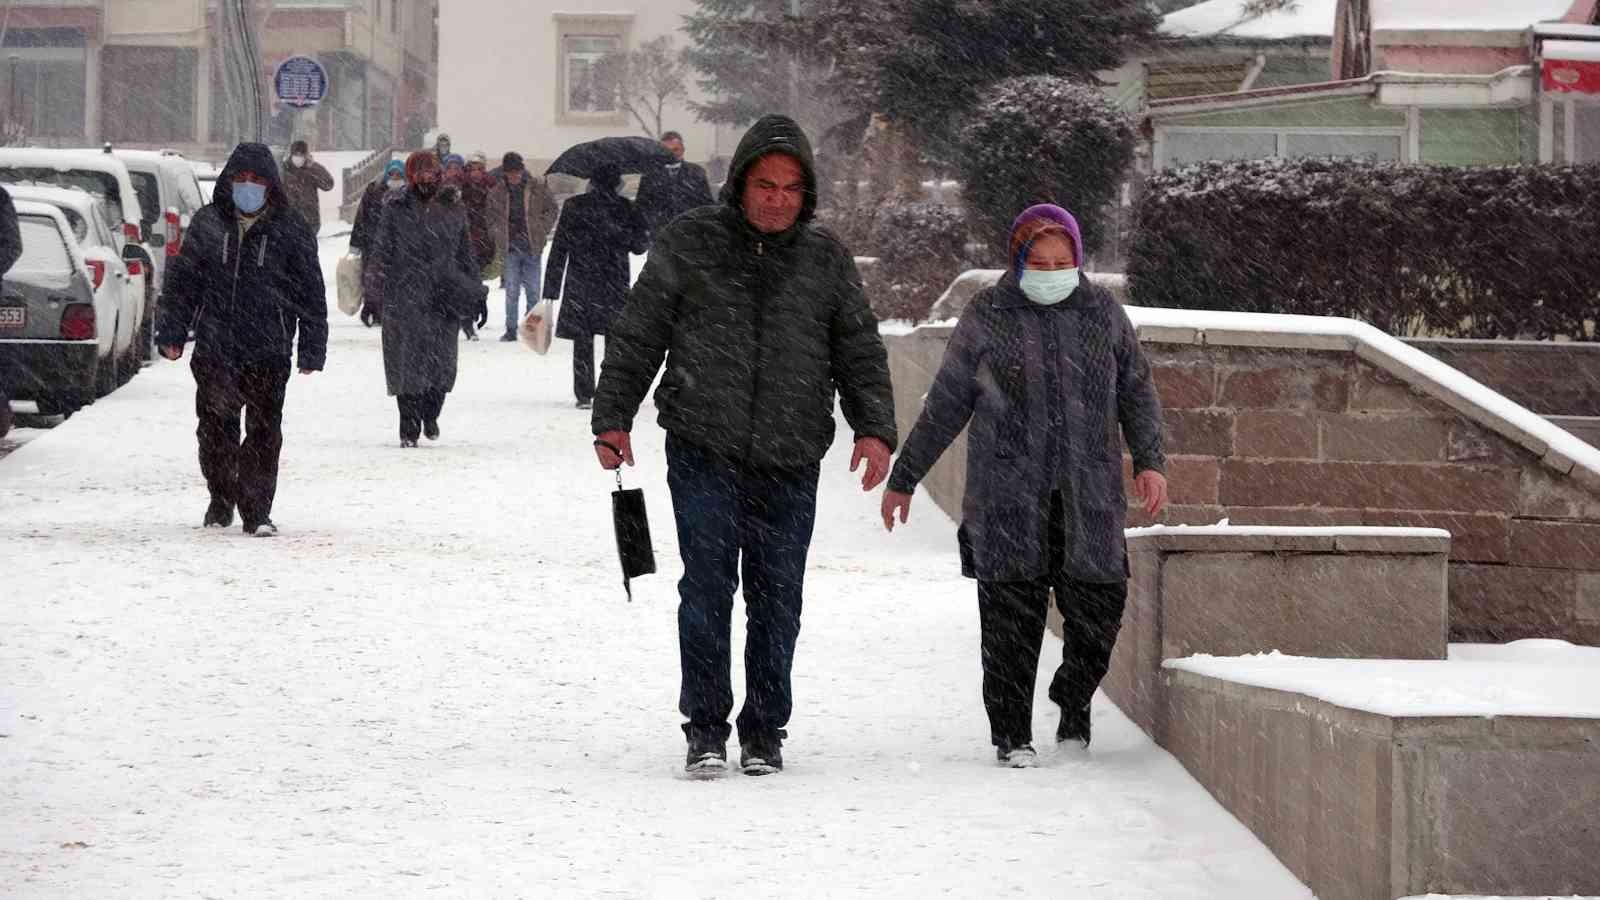 Yozgat’ta kar yağışı etkili oluyor #yozgat